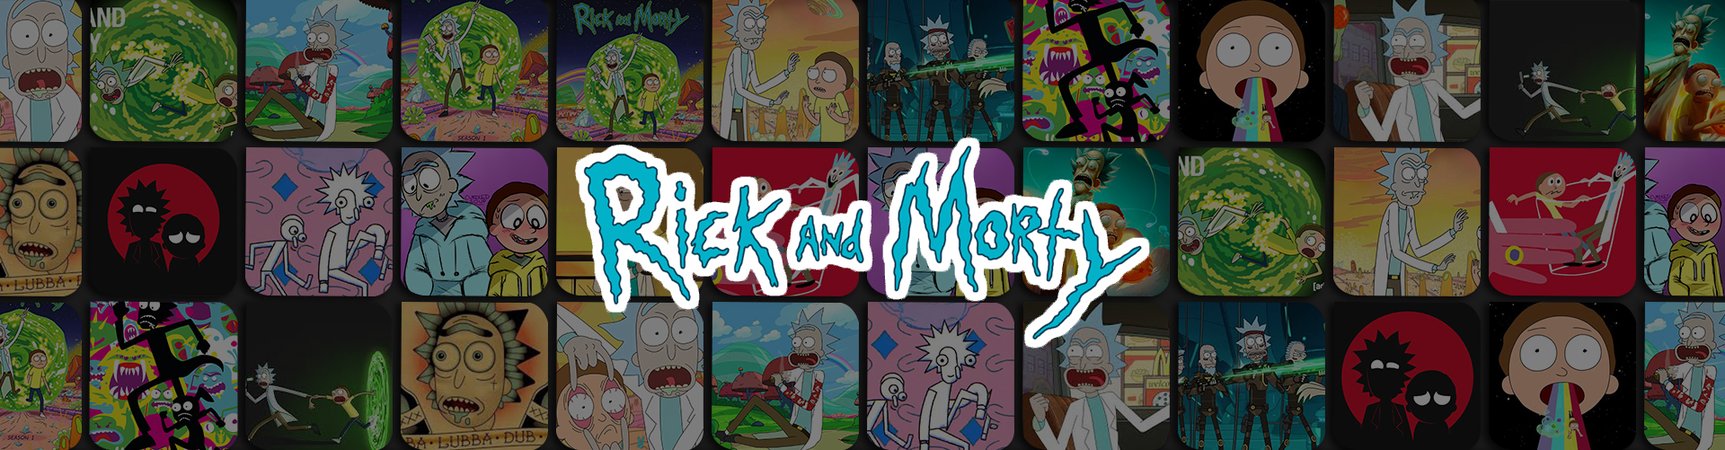 Rick & Morty Notebooks